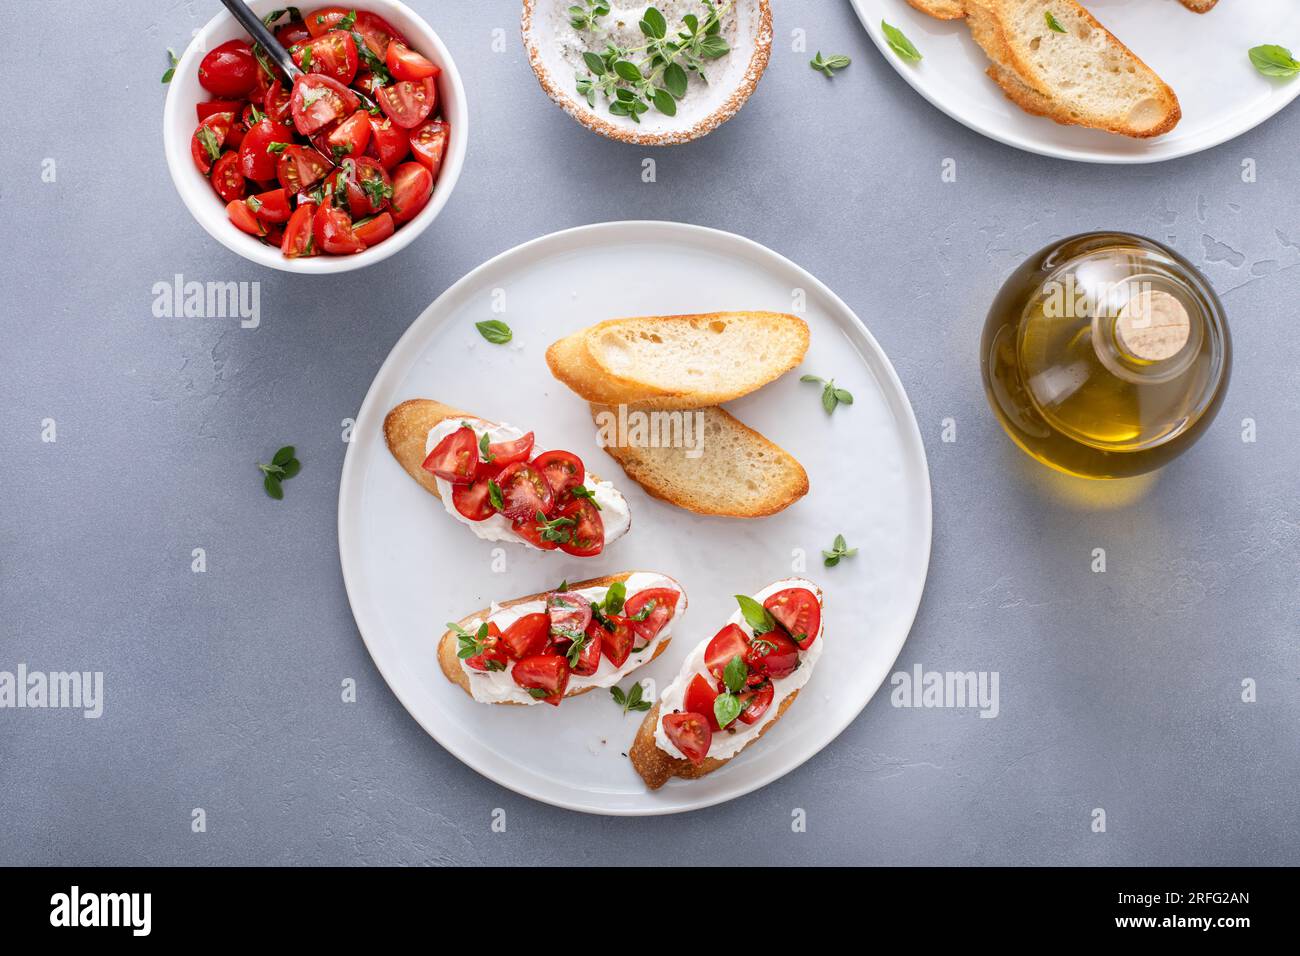 Tomato basil and cream cheese bruschettas with fresh cherry tomatoes and herbs Stock Photo